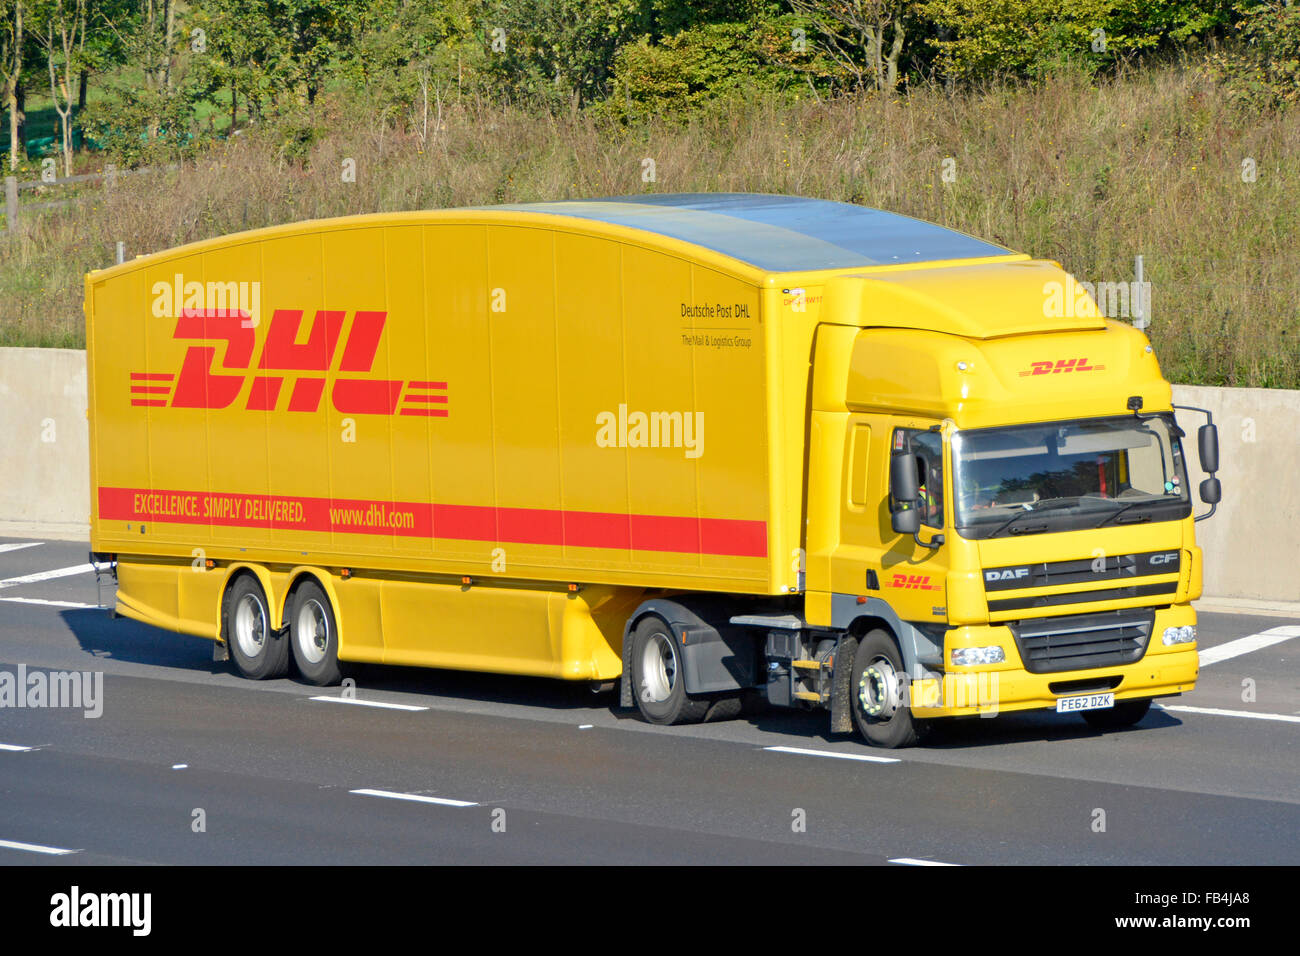 Vista laterale e frontale carrozzeria sagomata hgv Deutsche Post DHL consegna camion e conducente con logo sul rimorchio autostrada Inghilterra UK Foto Stock